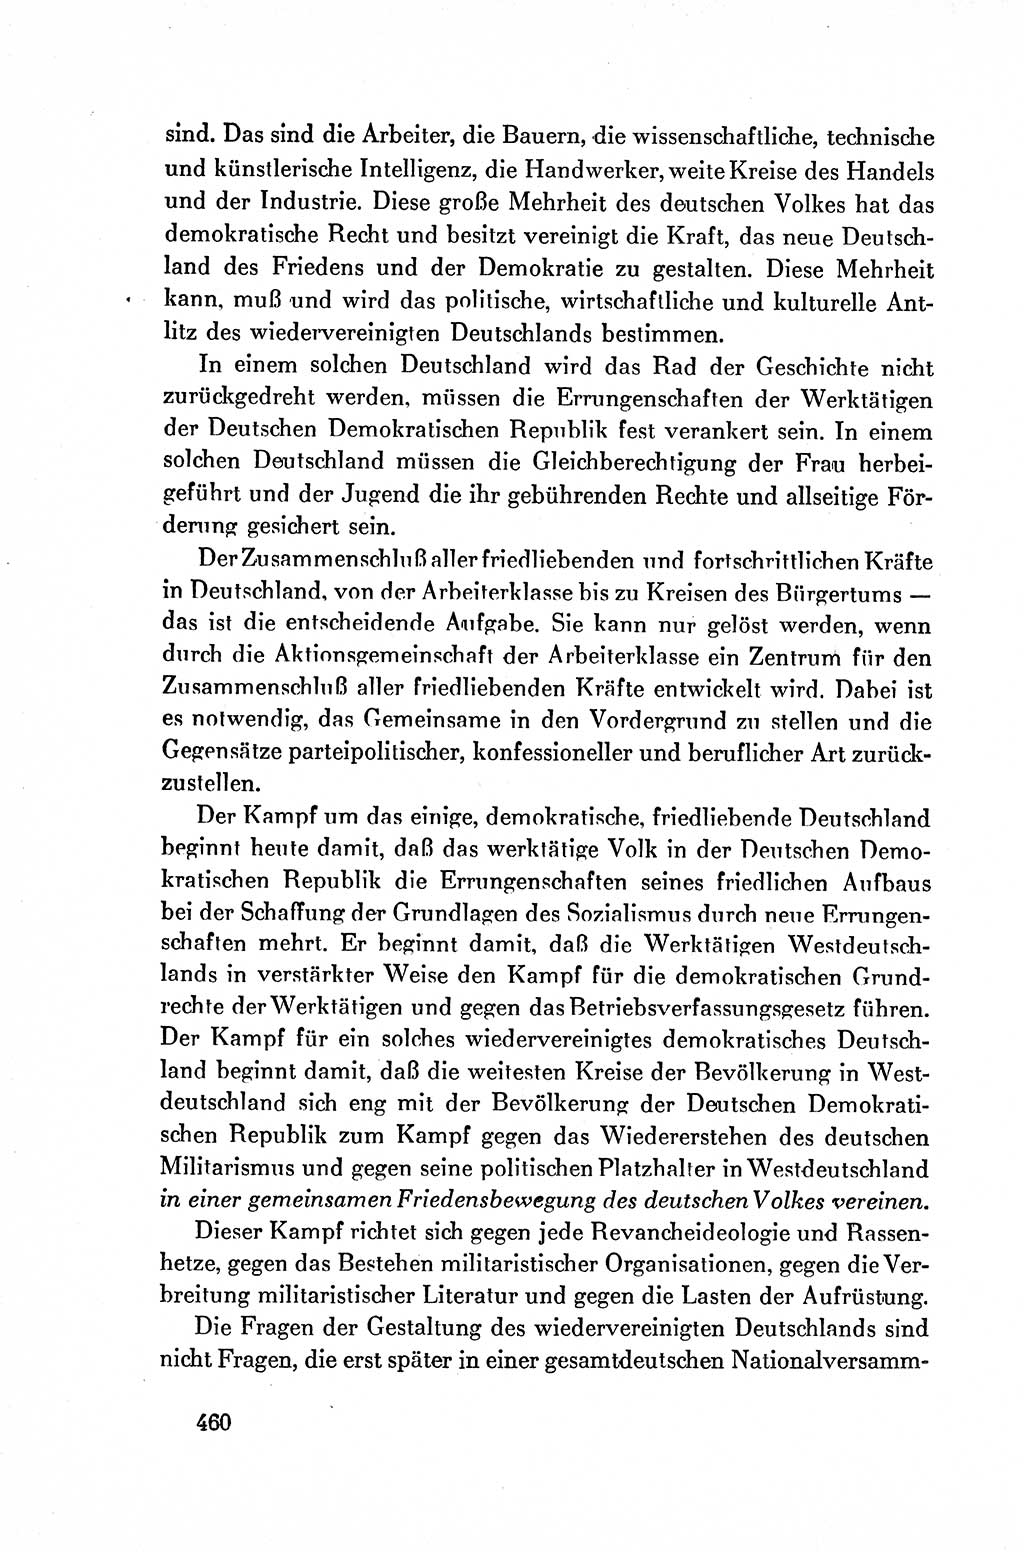 Dokumente der Sozialistischen Einheitspartei Deutschlands (SED) [Deutsche Demokratische Republik (DDR)] 1954-1955, Seite 460 (Dok. SED DDR 1954-1955, S. 460)